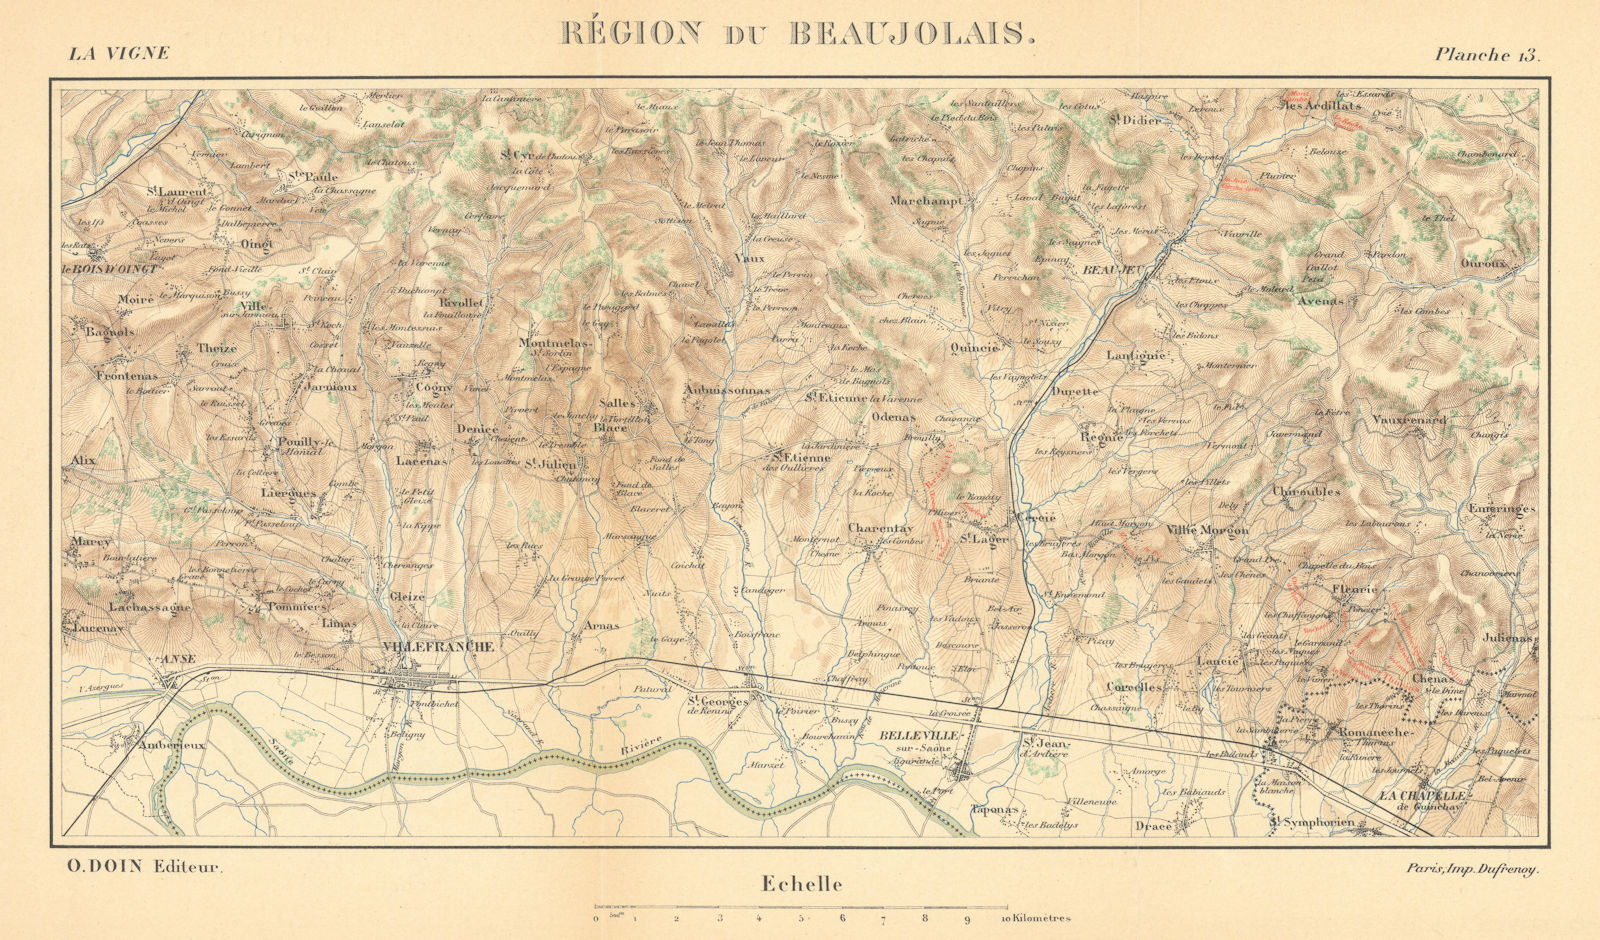 Associate Product Région du Beaujolais. Burgundy wine map. HAUSERMANN 1901 old antique chart